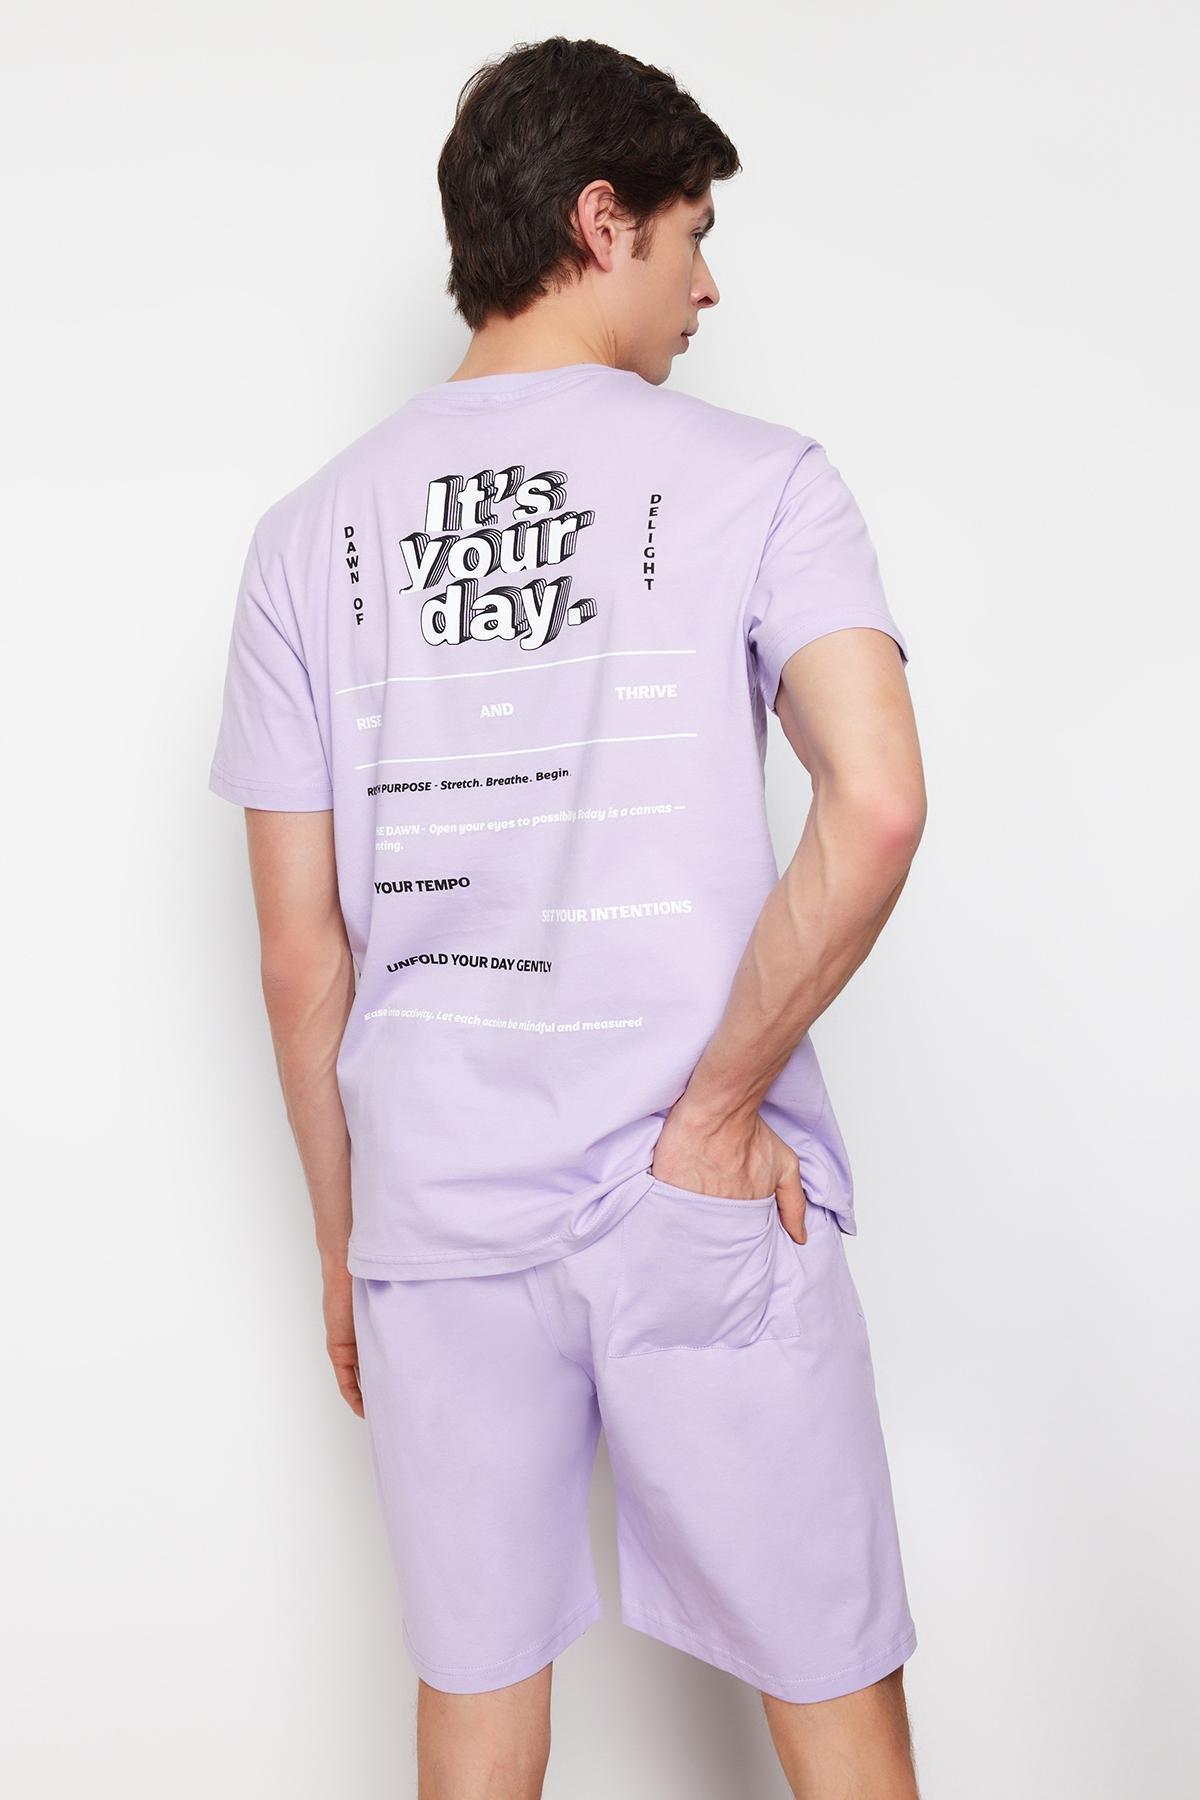 Trendyol - Purple Printed Pajamas Set